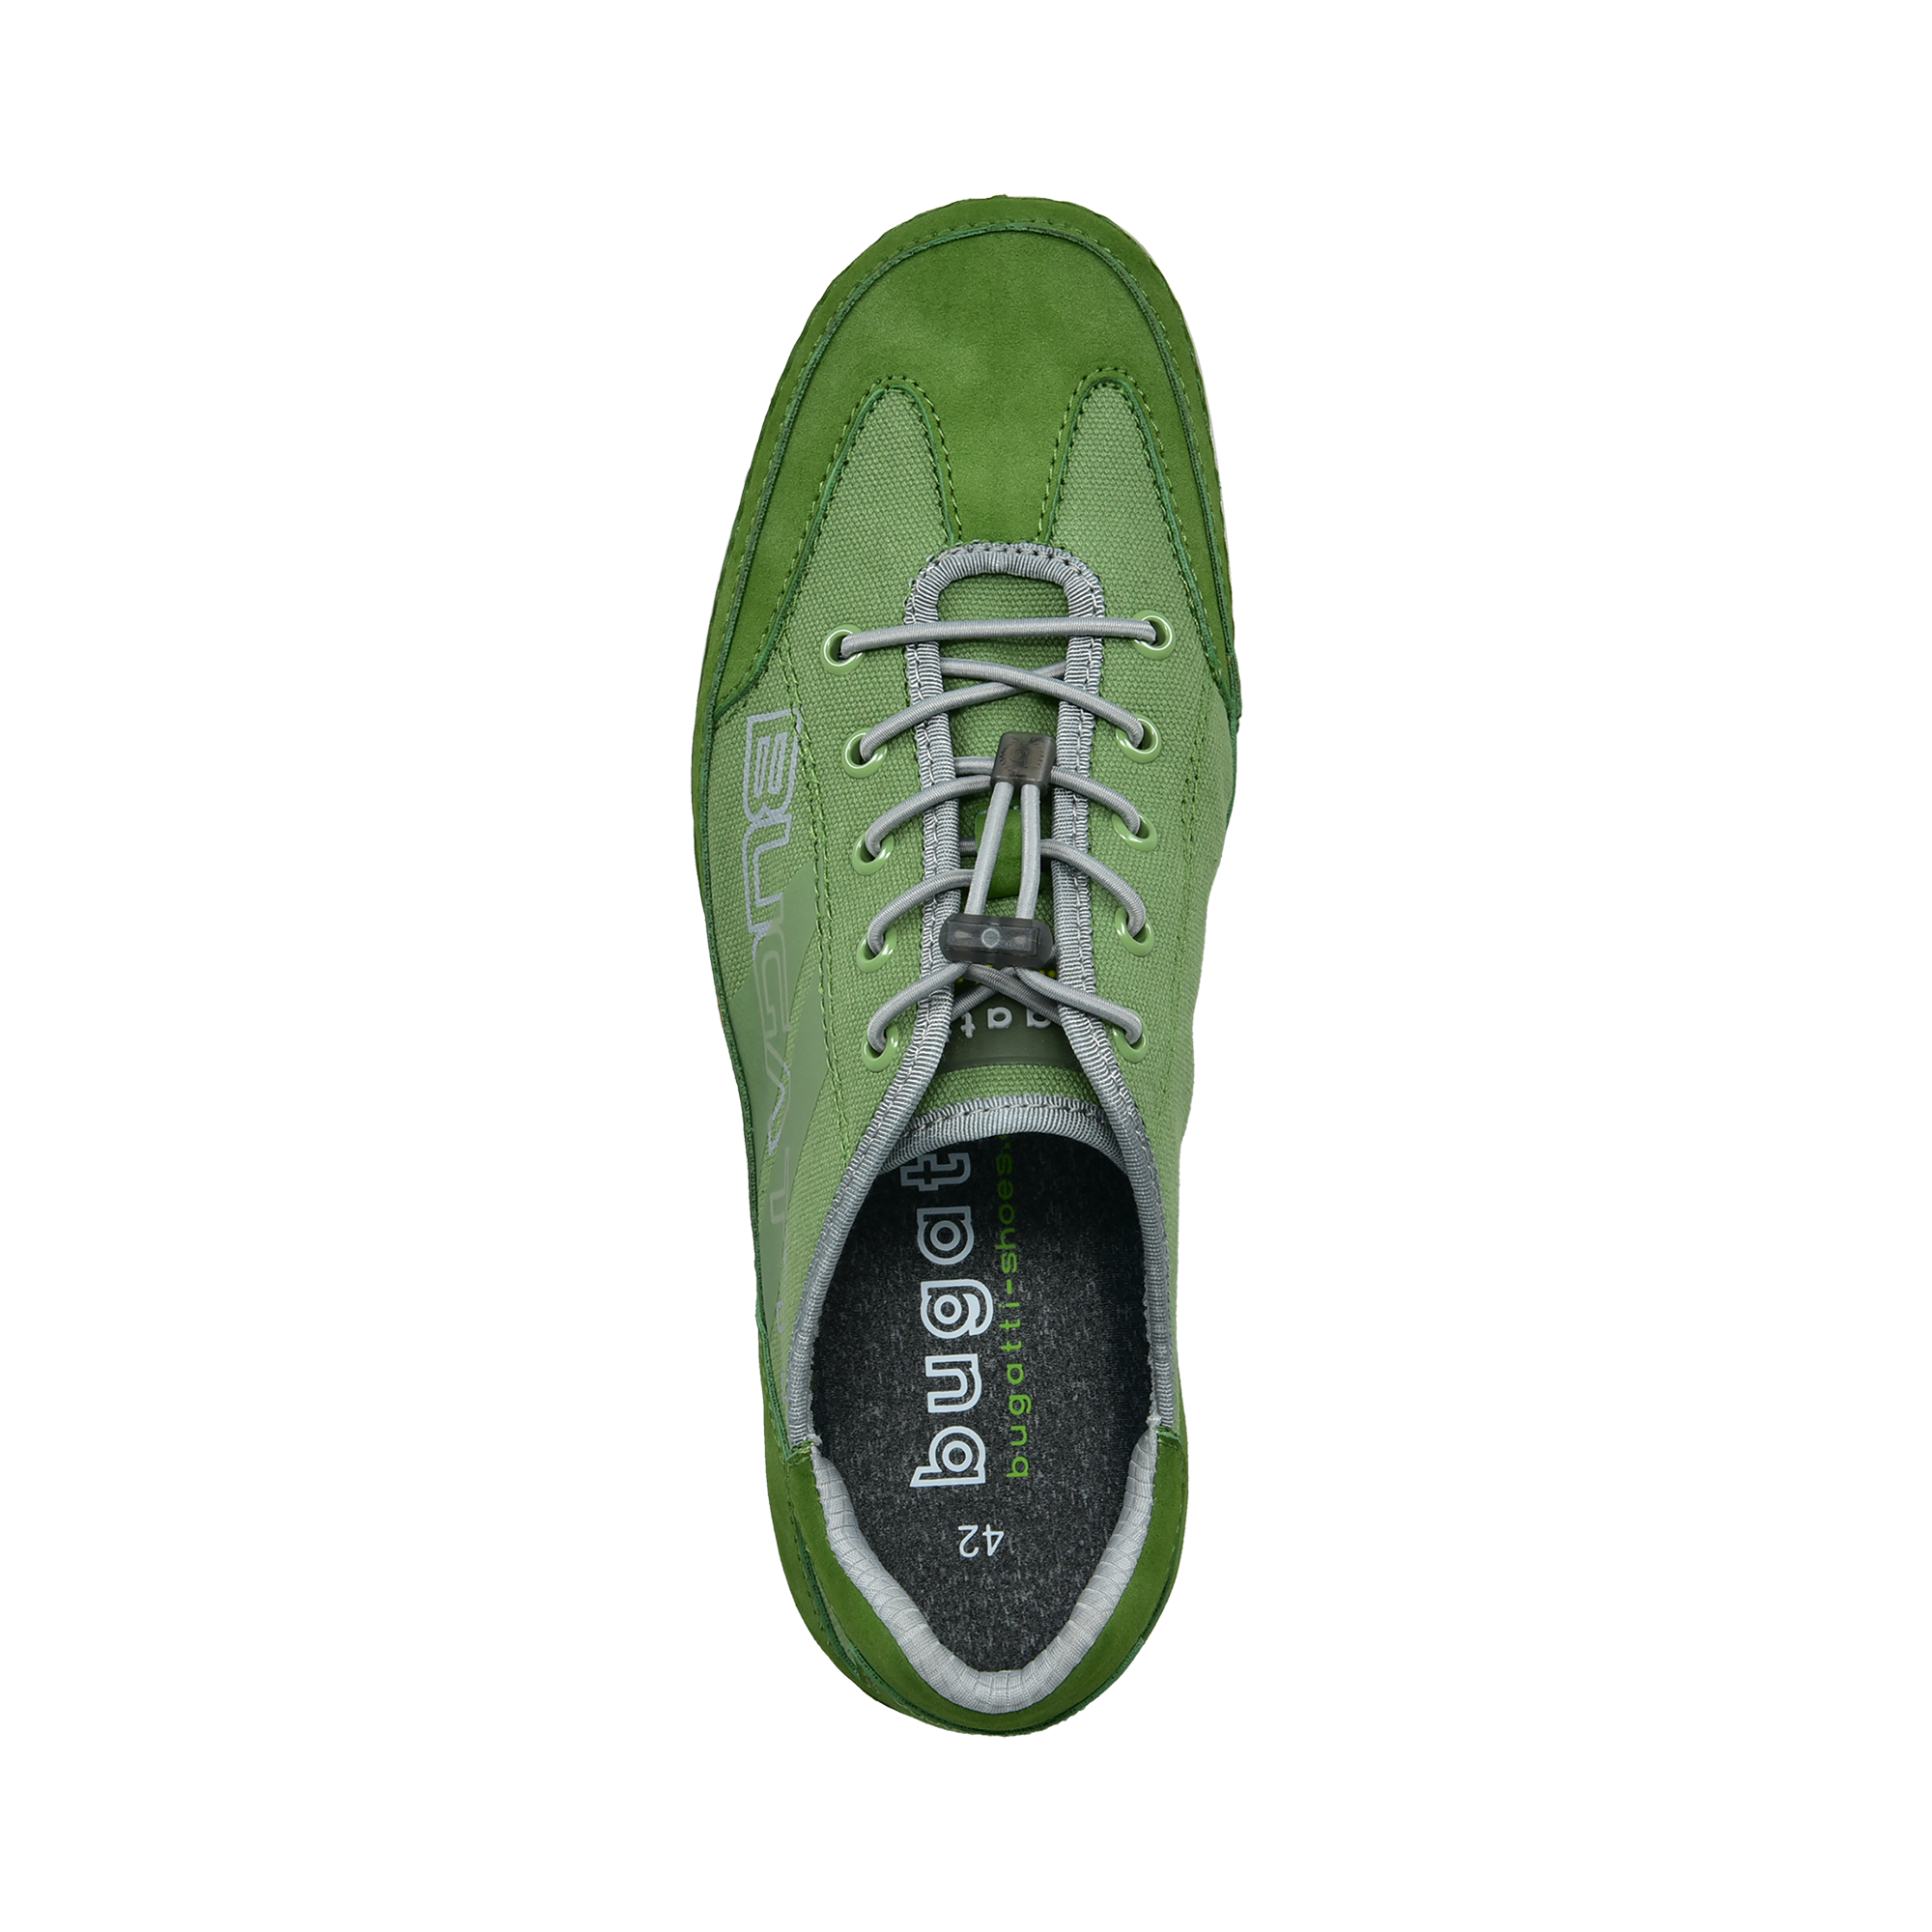 Sneaker green